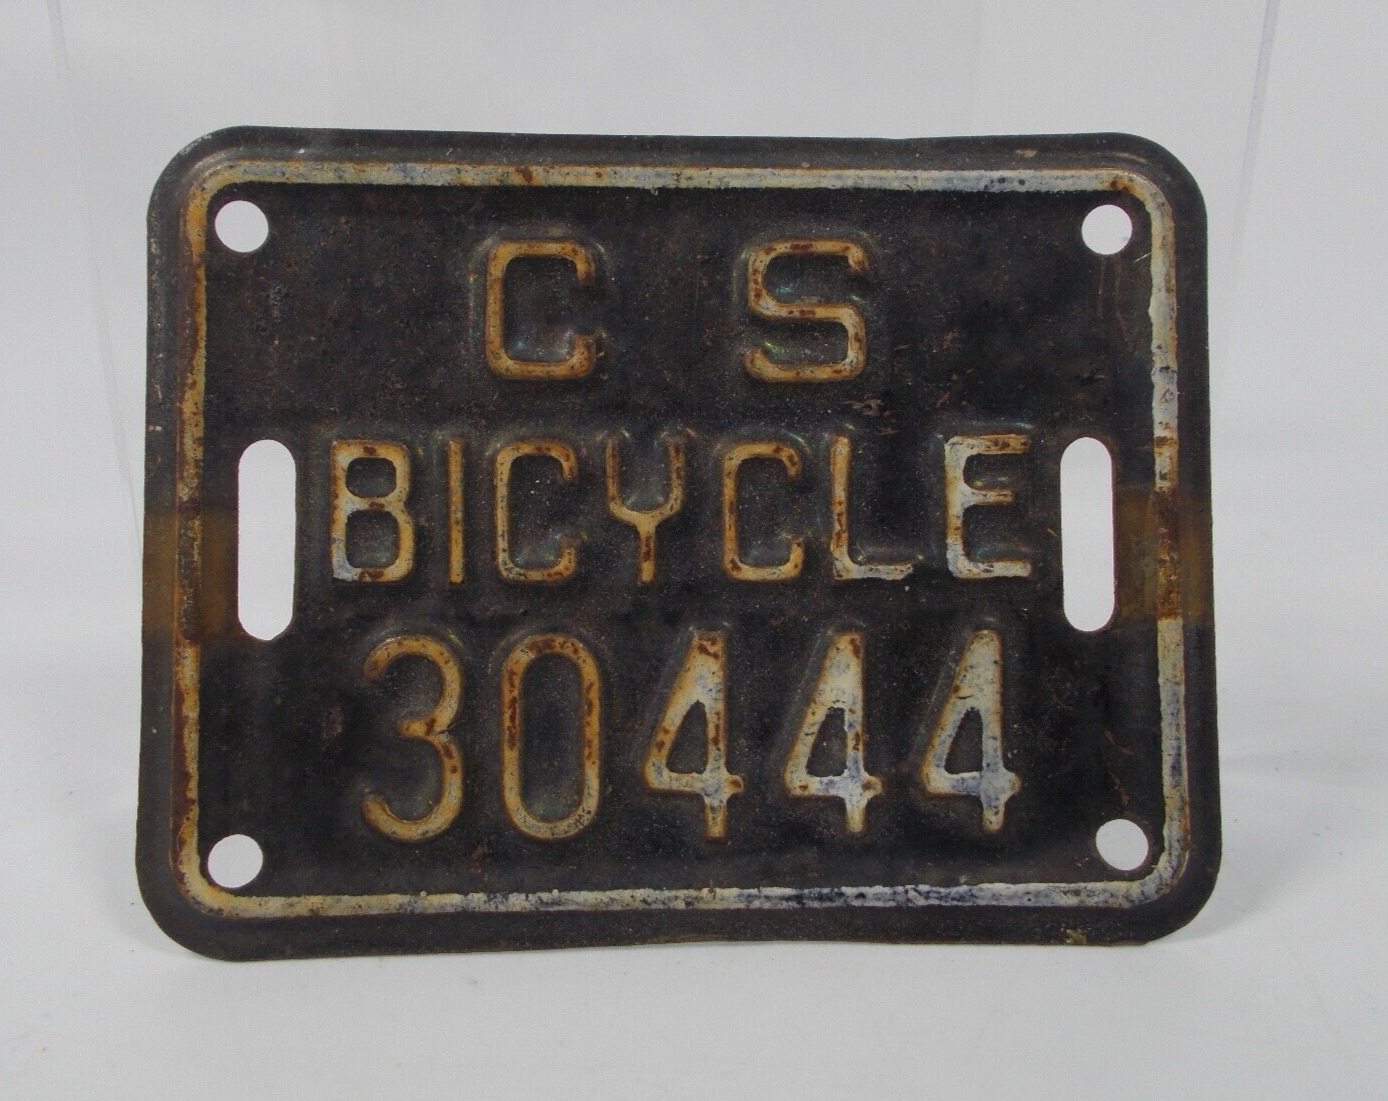 Vintage C S Bicycle License Plate 30444